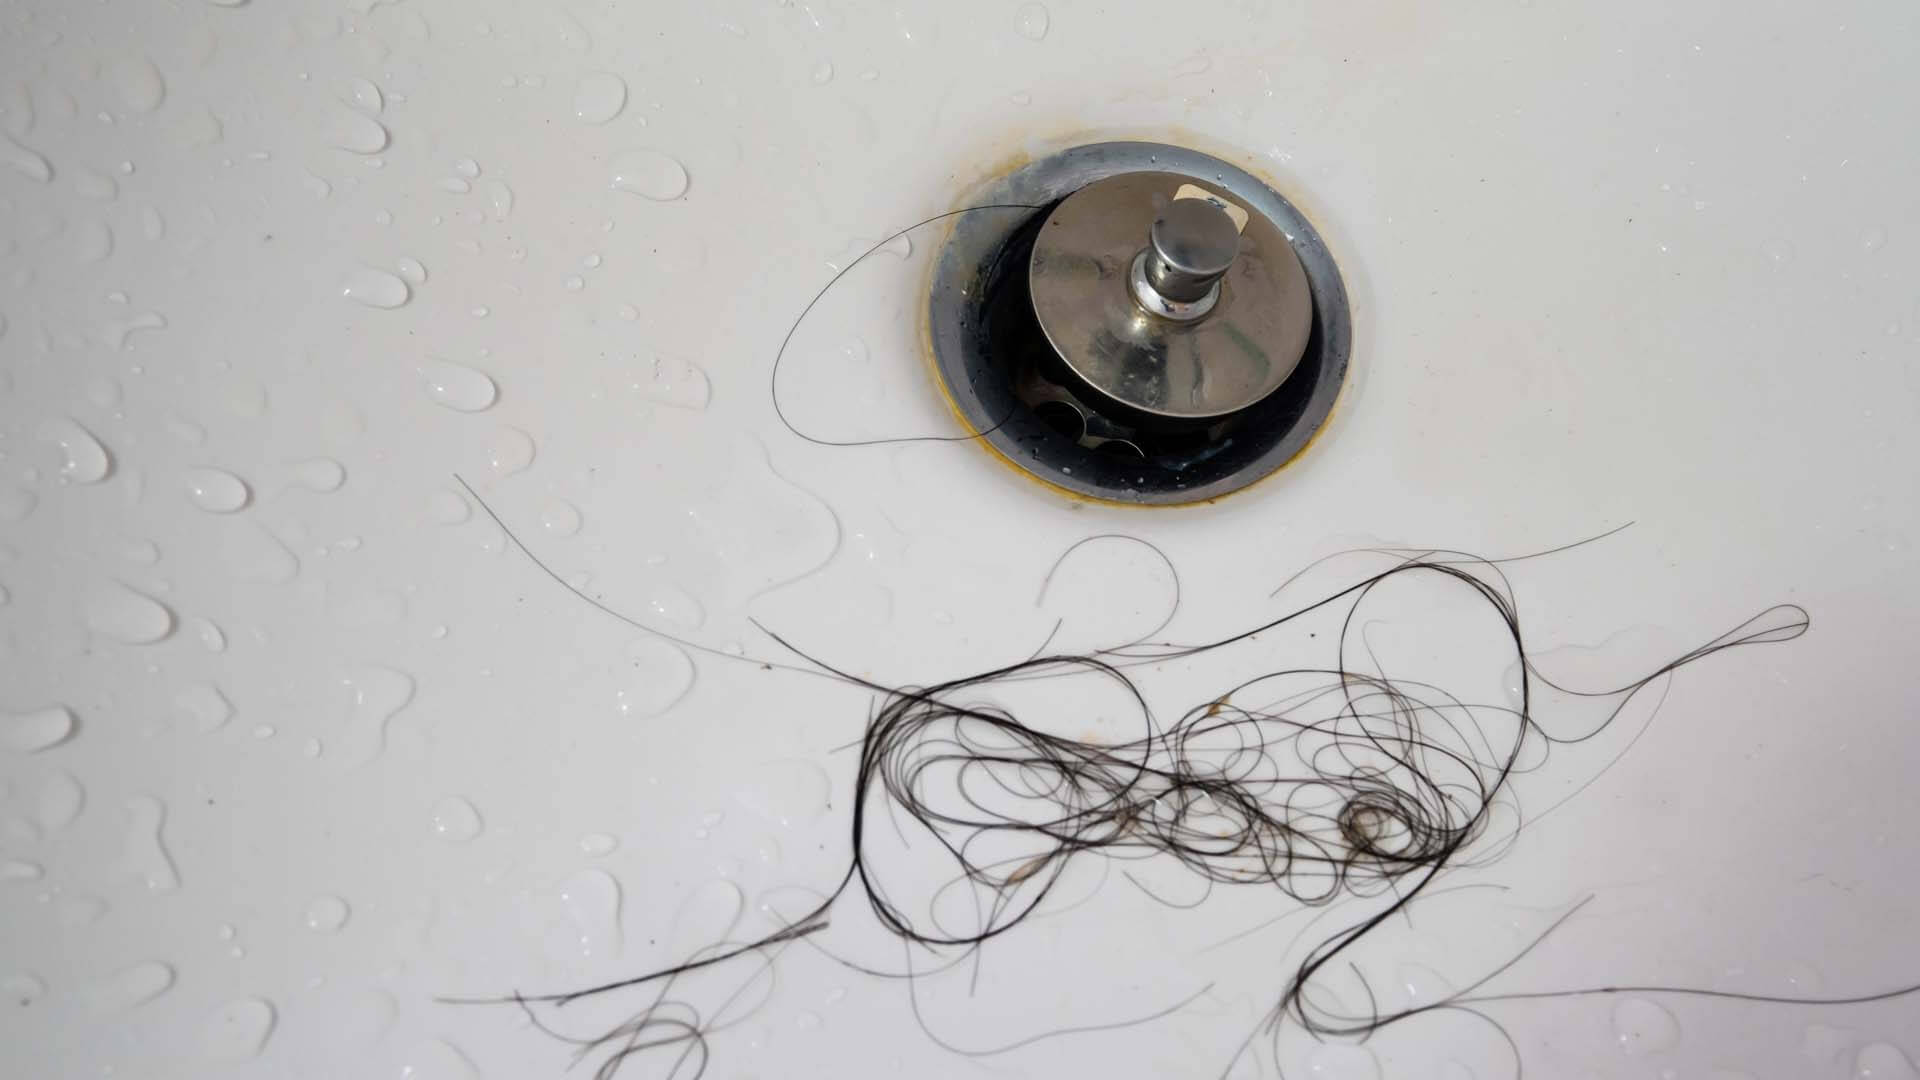 Bathtub drain clogged by hair at home in Davenport, FL.